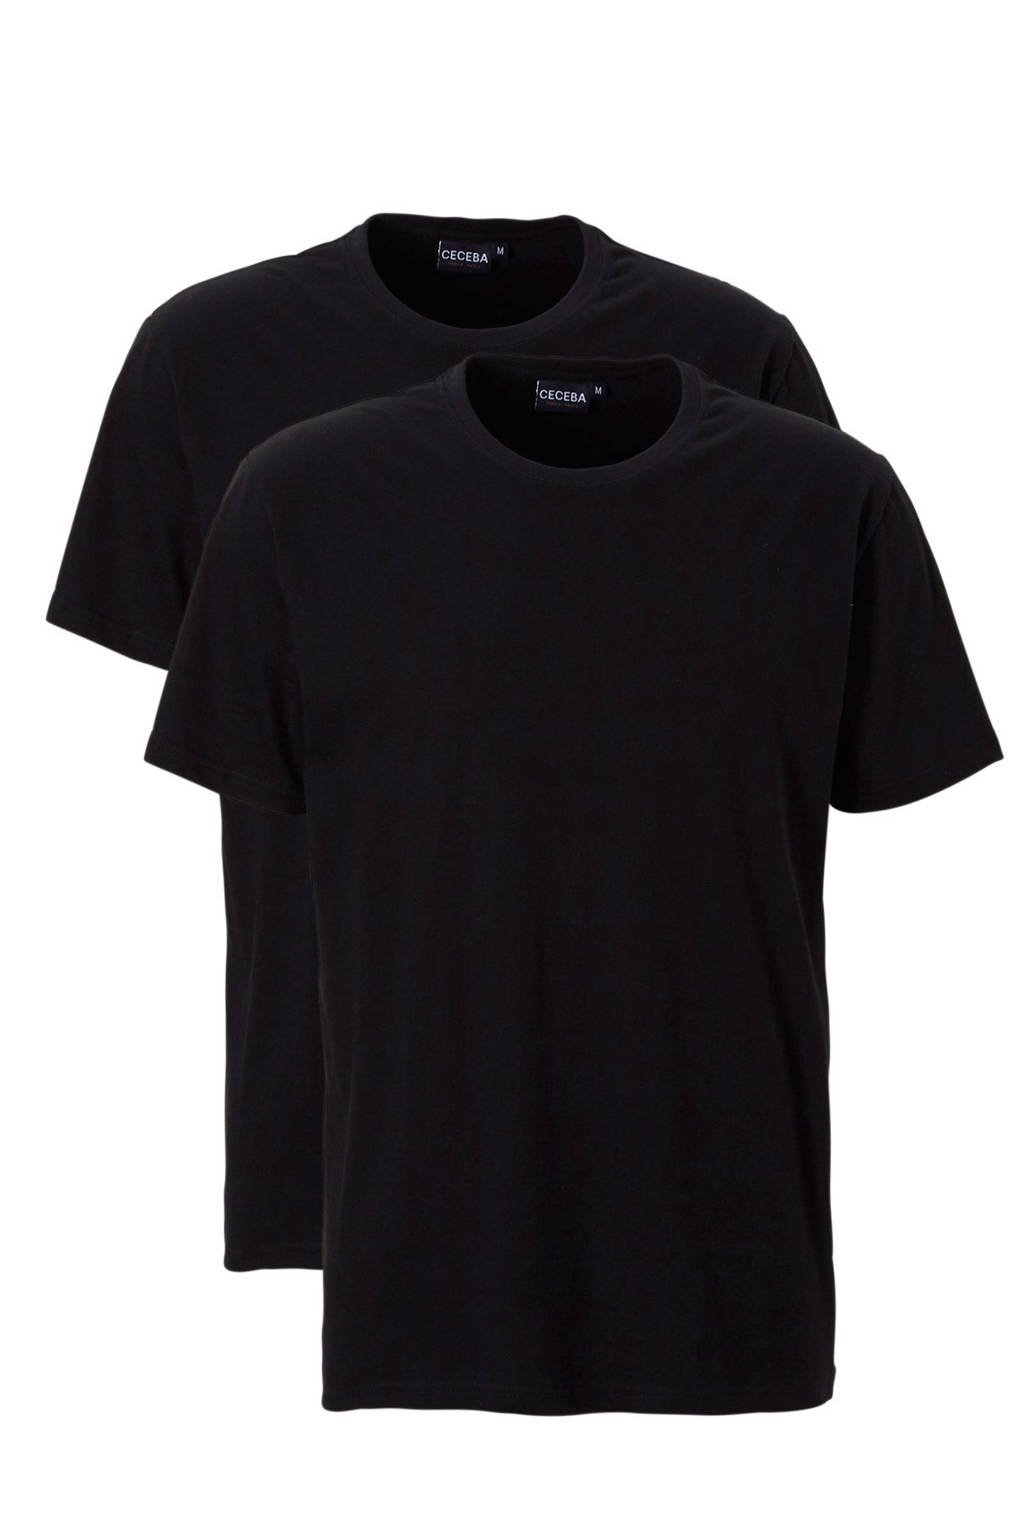 Ceceba +size basic t-shirt (set van 2) zwart, Zwart